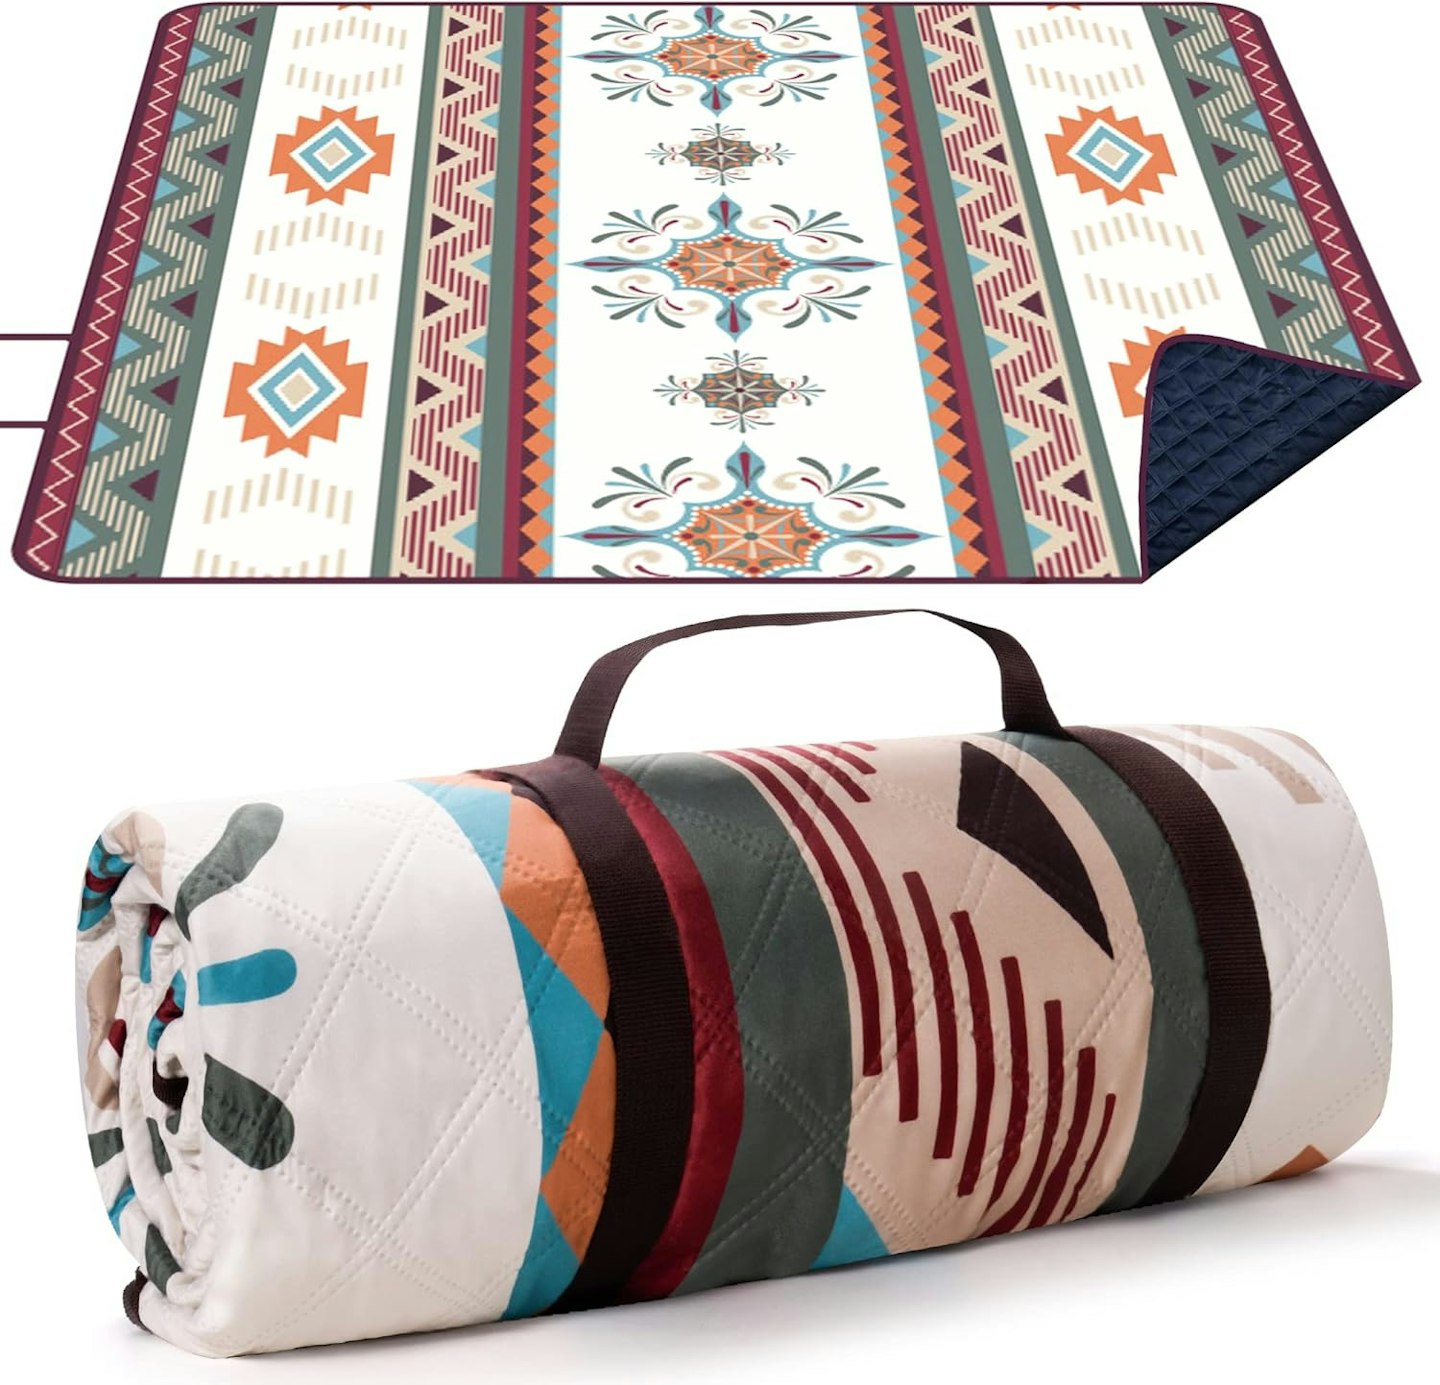 Bohemian print picnic blanket